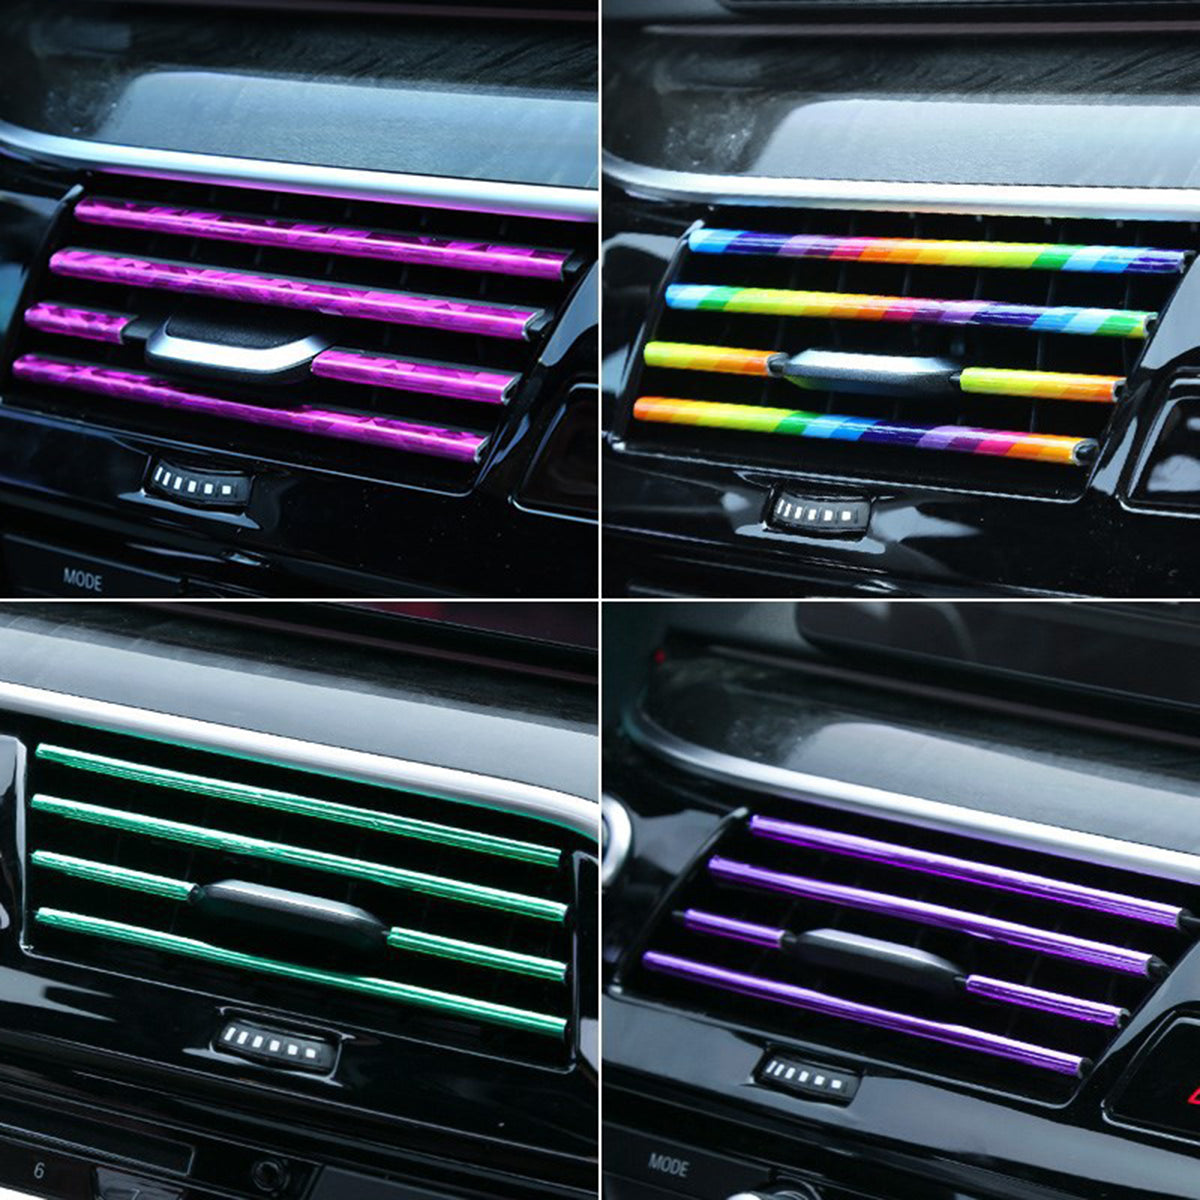 10PCS Car Air Conditioner Outlet Vent Grille Decoration U Shape Molding Trim-Strip - Auto GoShop